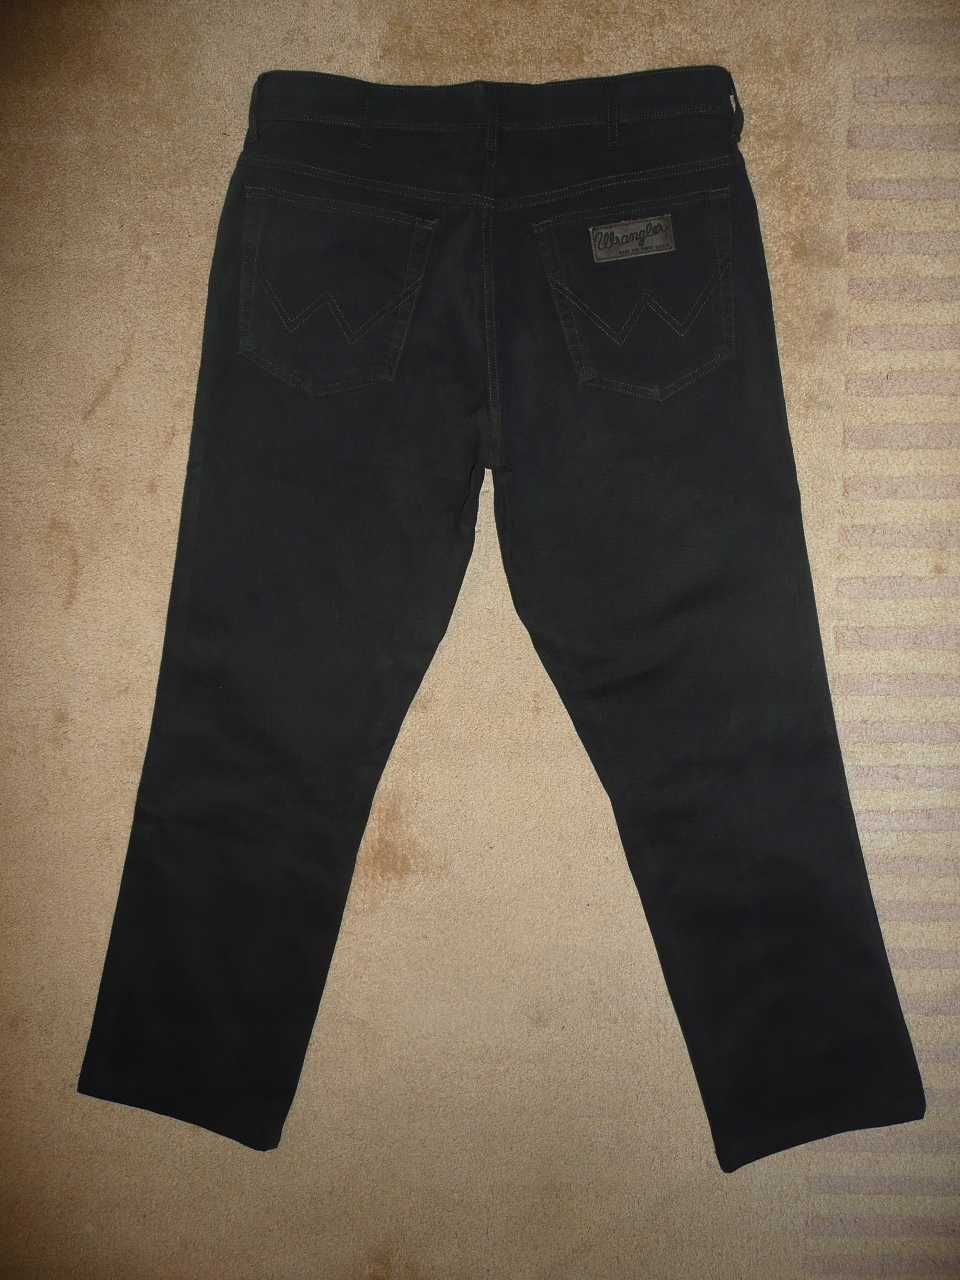 Spodnie dżinsy WRANGLER W34/L29=45/98cm jeansy